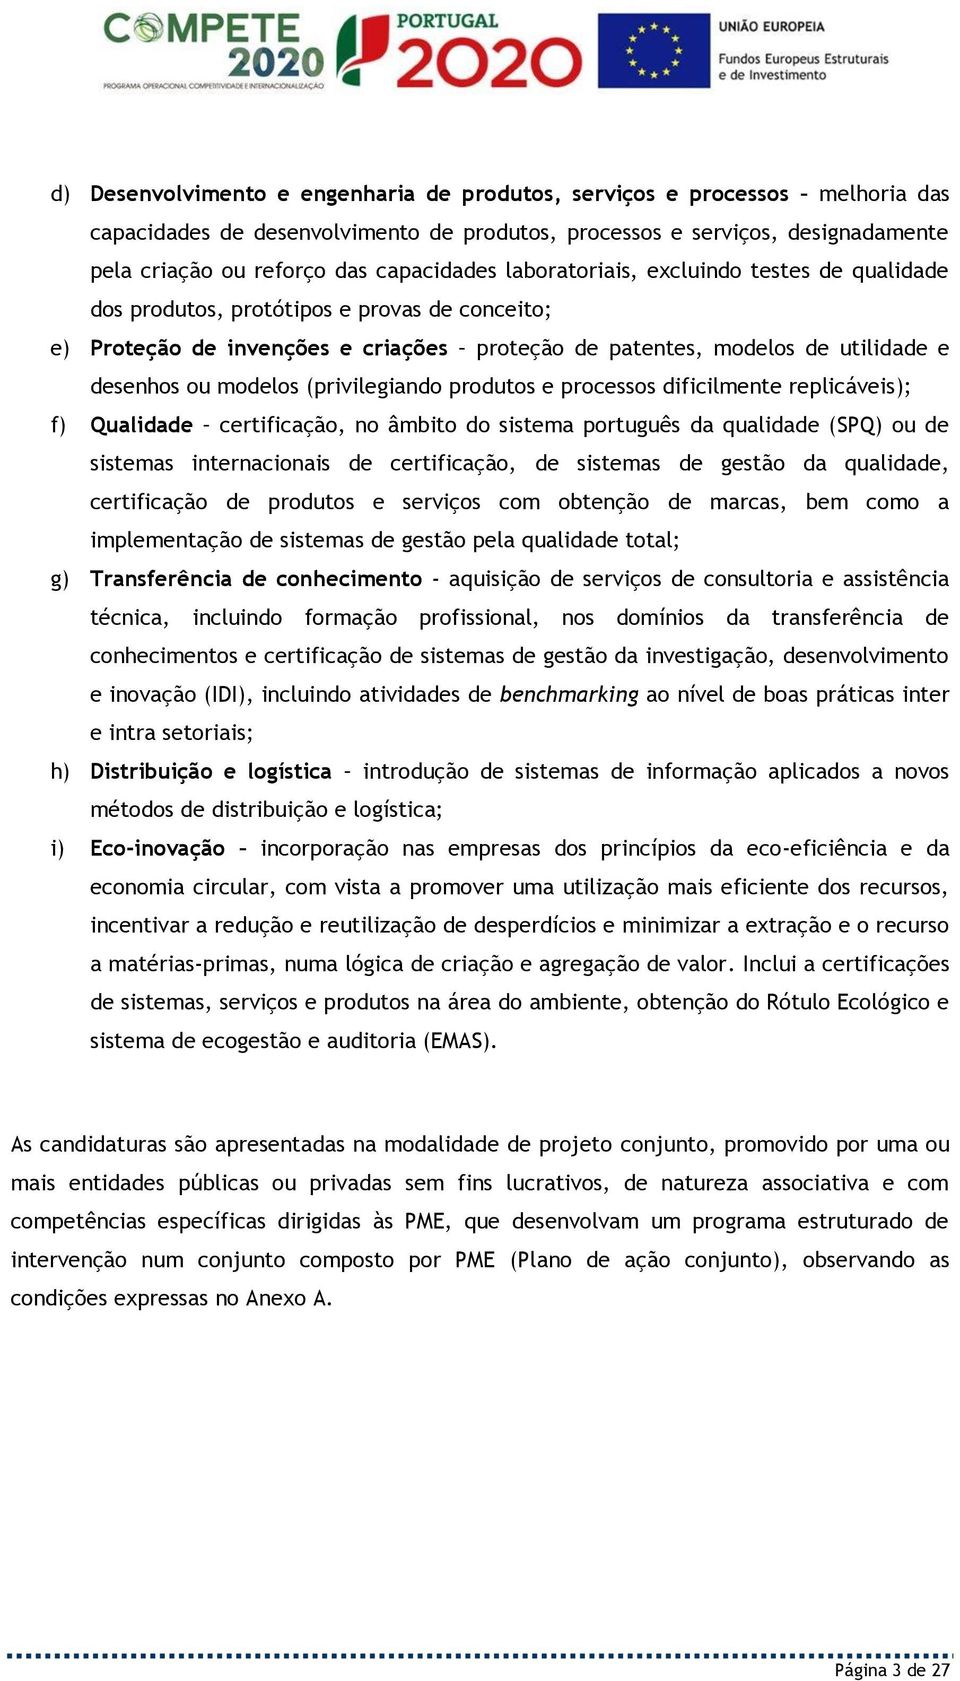 (privilegiando produtos e processos dificilmente replicáveis); f) Qualidade certificação, no âmbito do sistema português da qualidade (SPQ) ou de sistemas internacionais de certificação, de sistemas